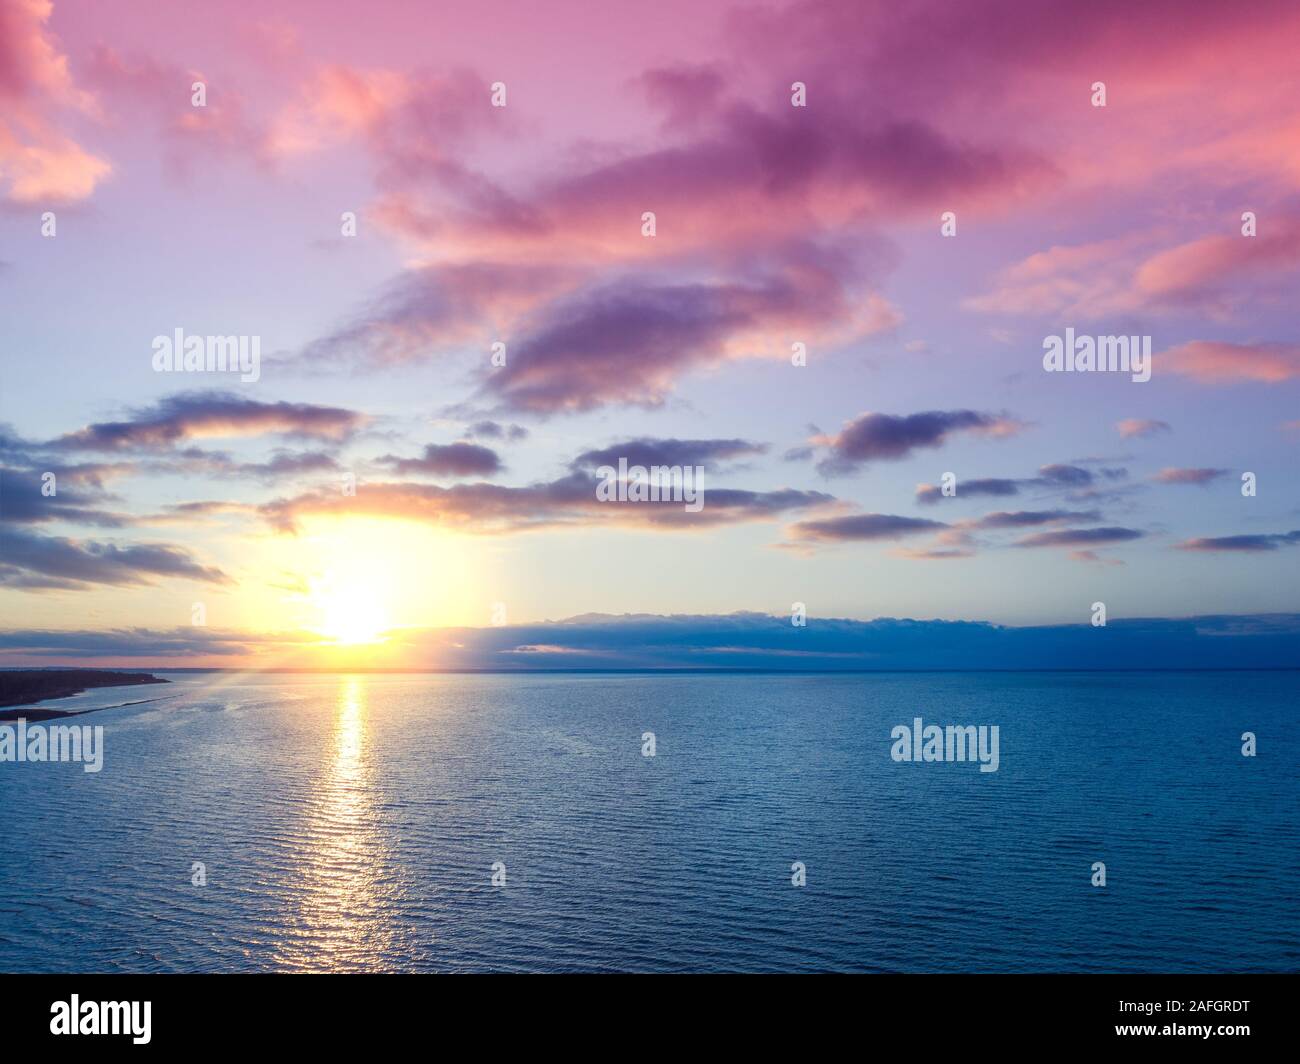 Il tramonto sul mare. Paesaggio di mare in serata. Bel tramonto con cielo drammatico. Vista aerea Foto Stock